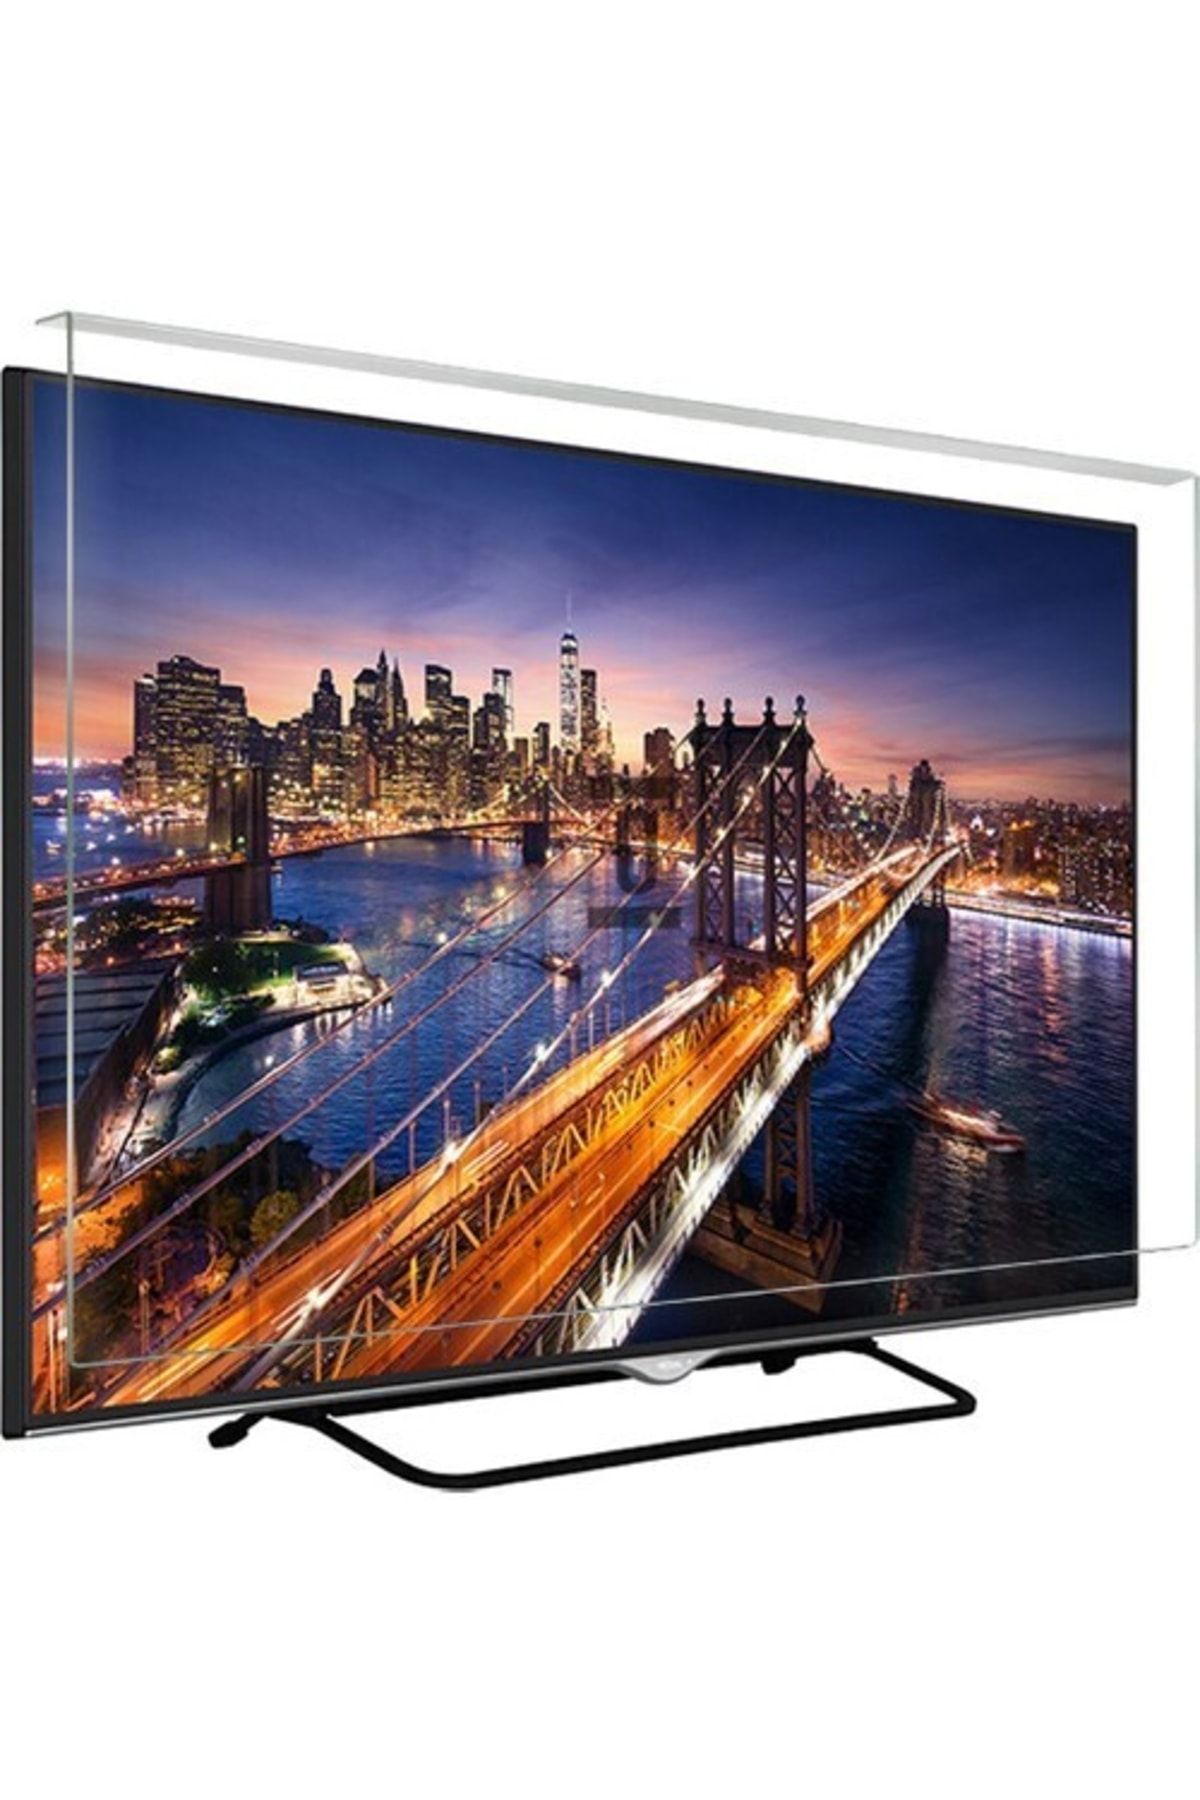 Finlux Asaf Online-evçelik 42fx8440f Tv Ekran Koruyucu Düz (flat) Ekran